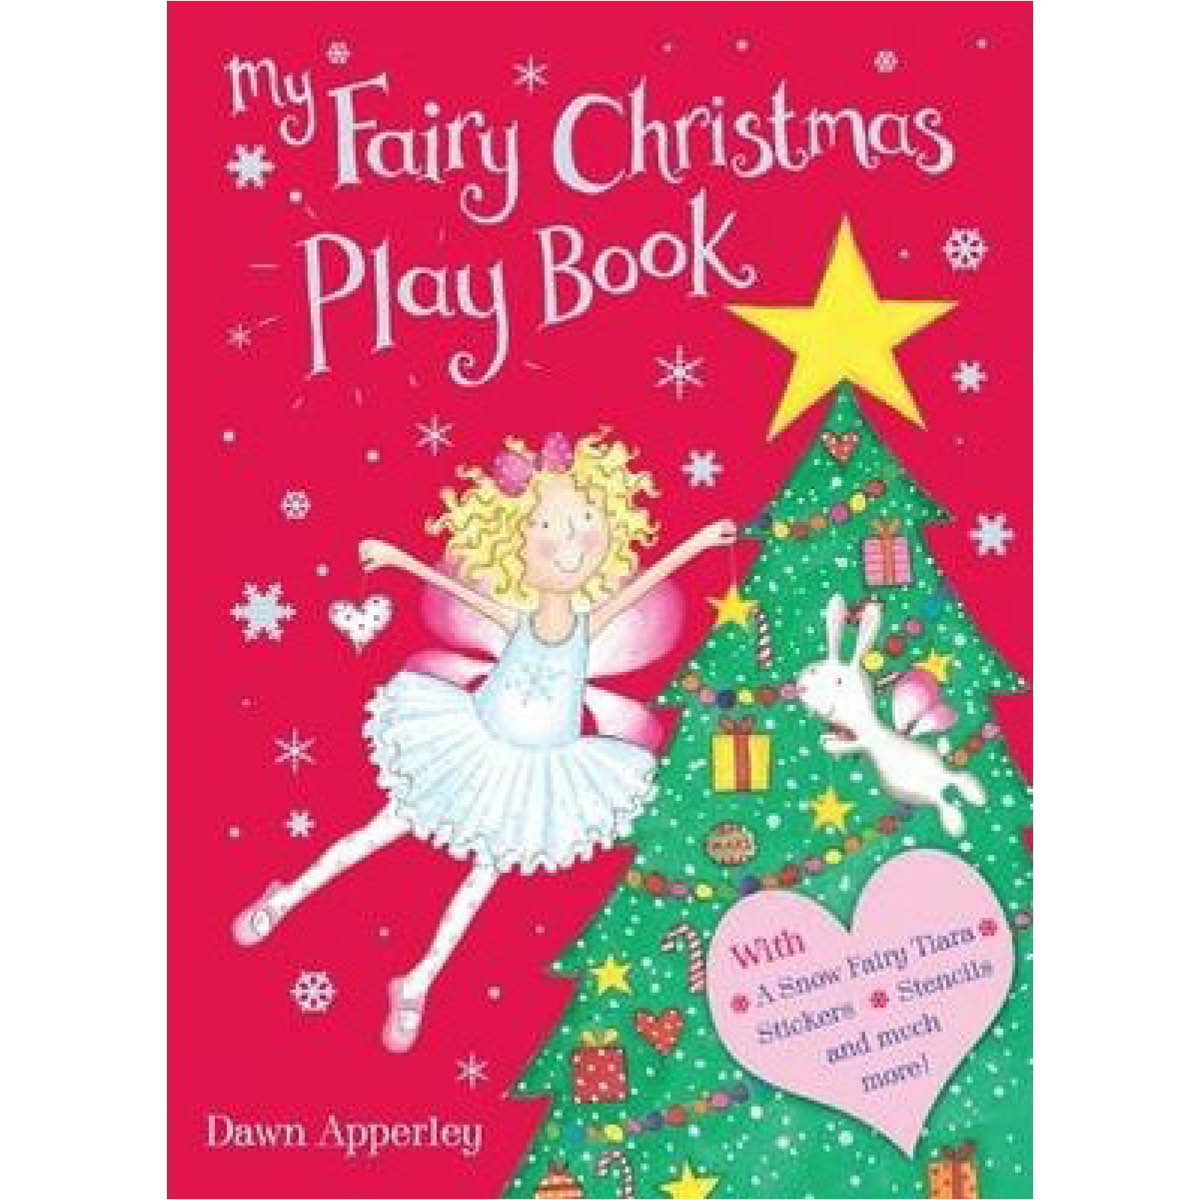 My Fairy Christmas Play Book